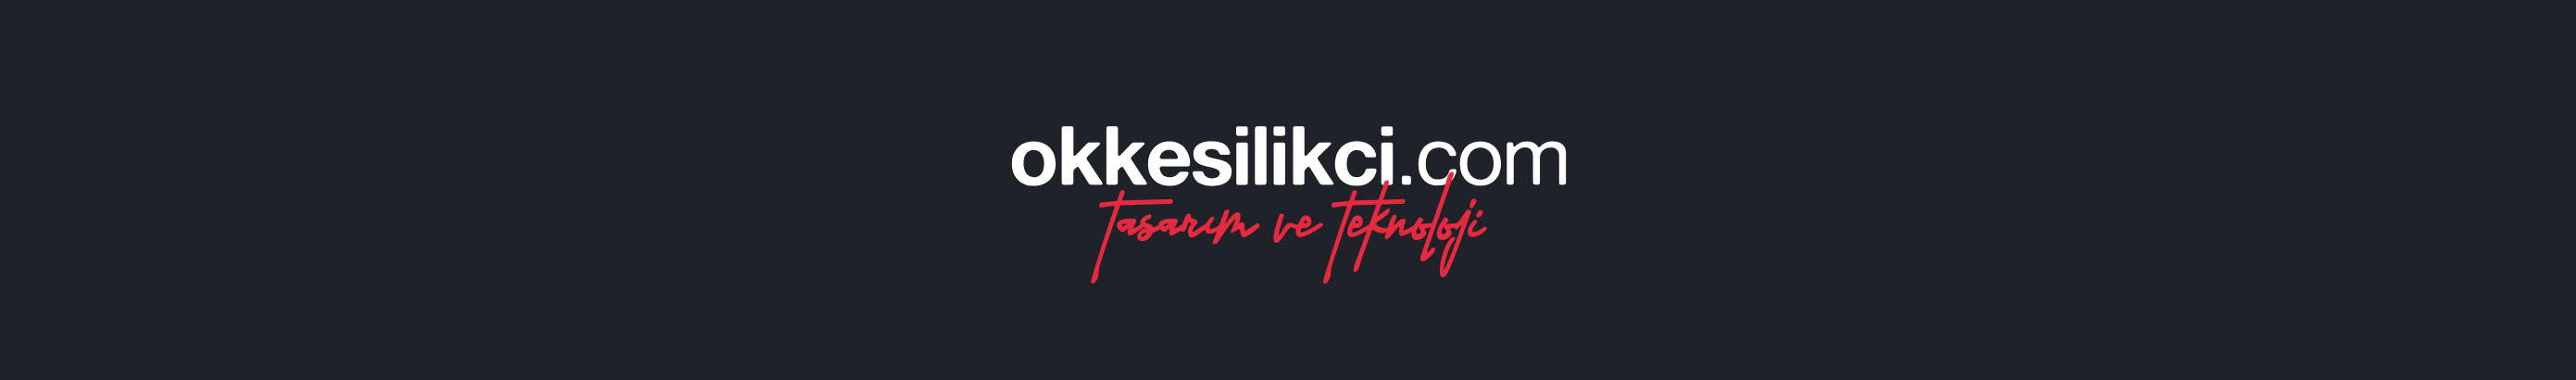 Баннер профиля Okkes ILIKCI